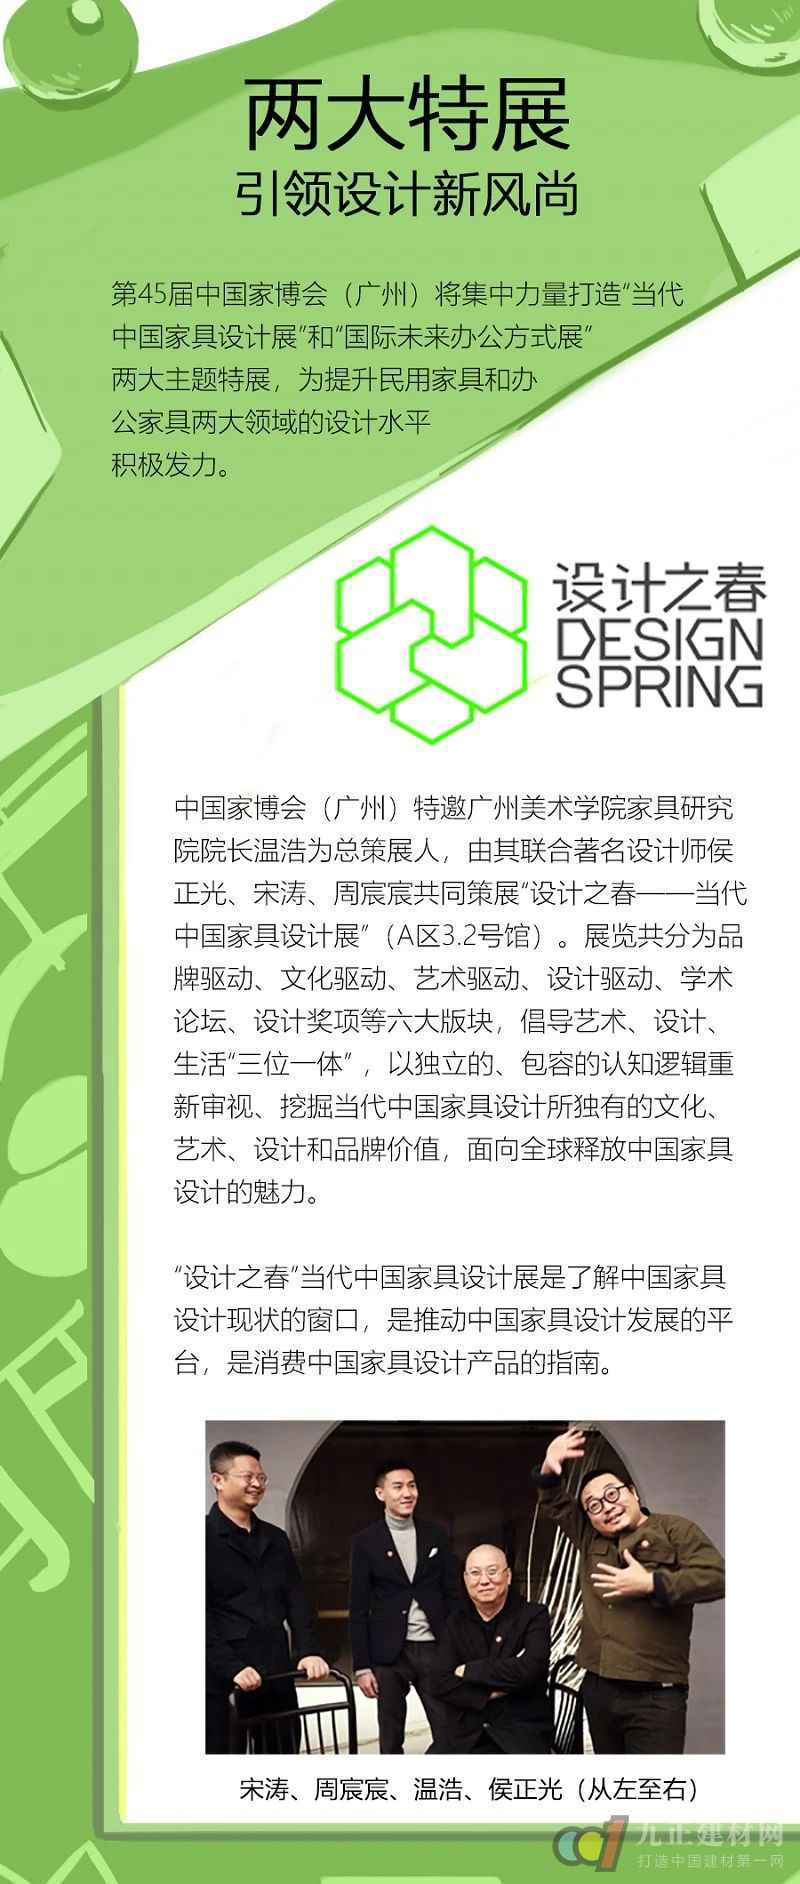  抢先机，赢未来！7月27-30日，中国家博会（广州）邀您开启精彩下半年！